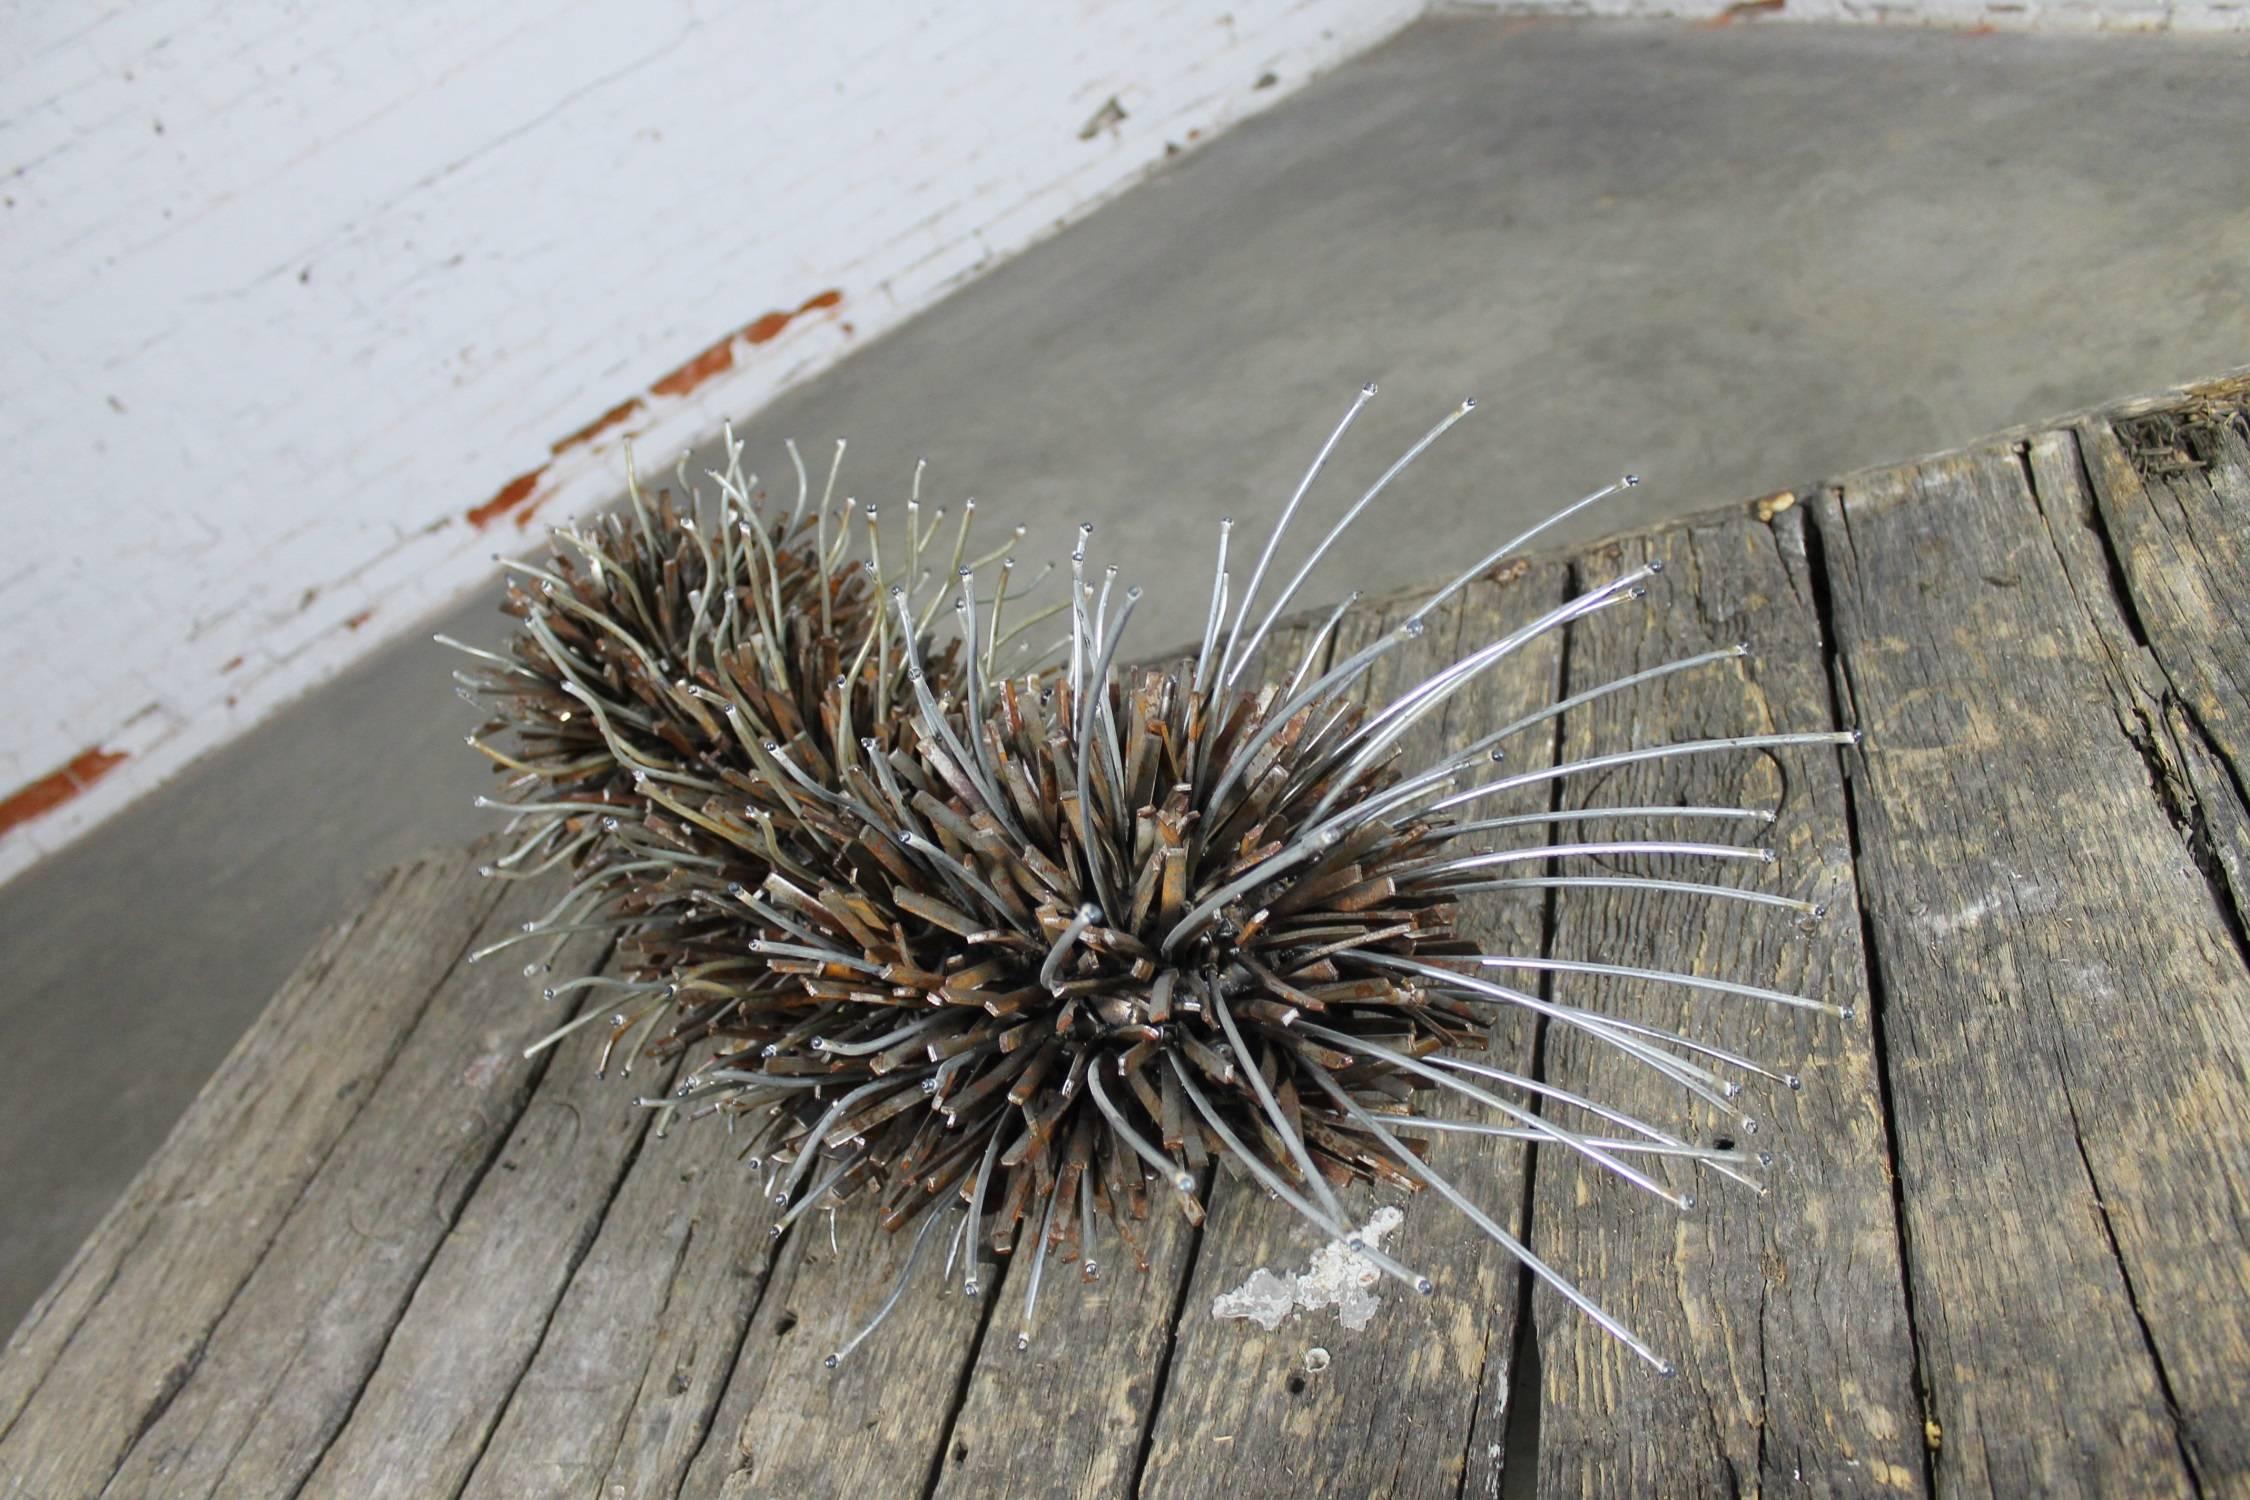 American Caterpillar Sculpture or Garden Art of Reclaimed Metal by Jason Startup